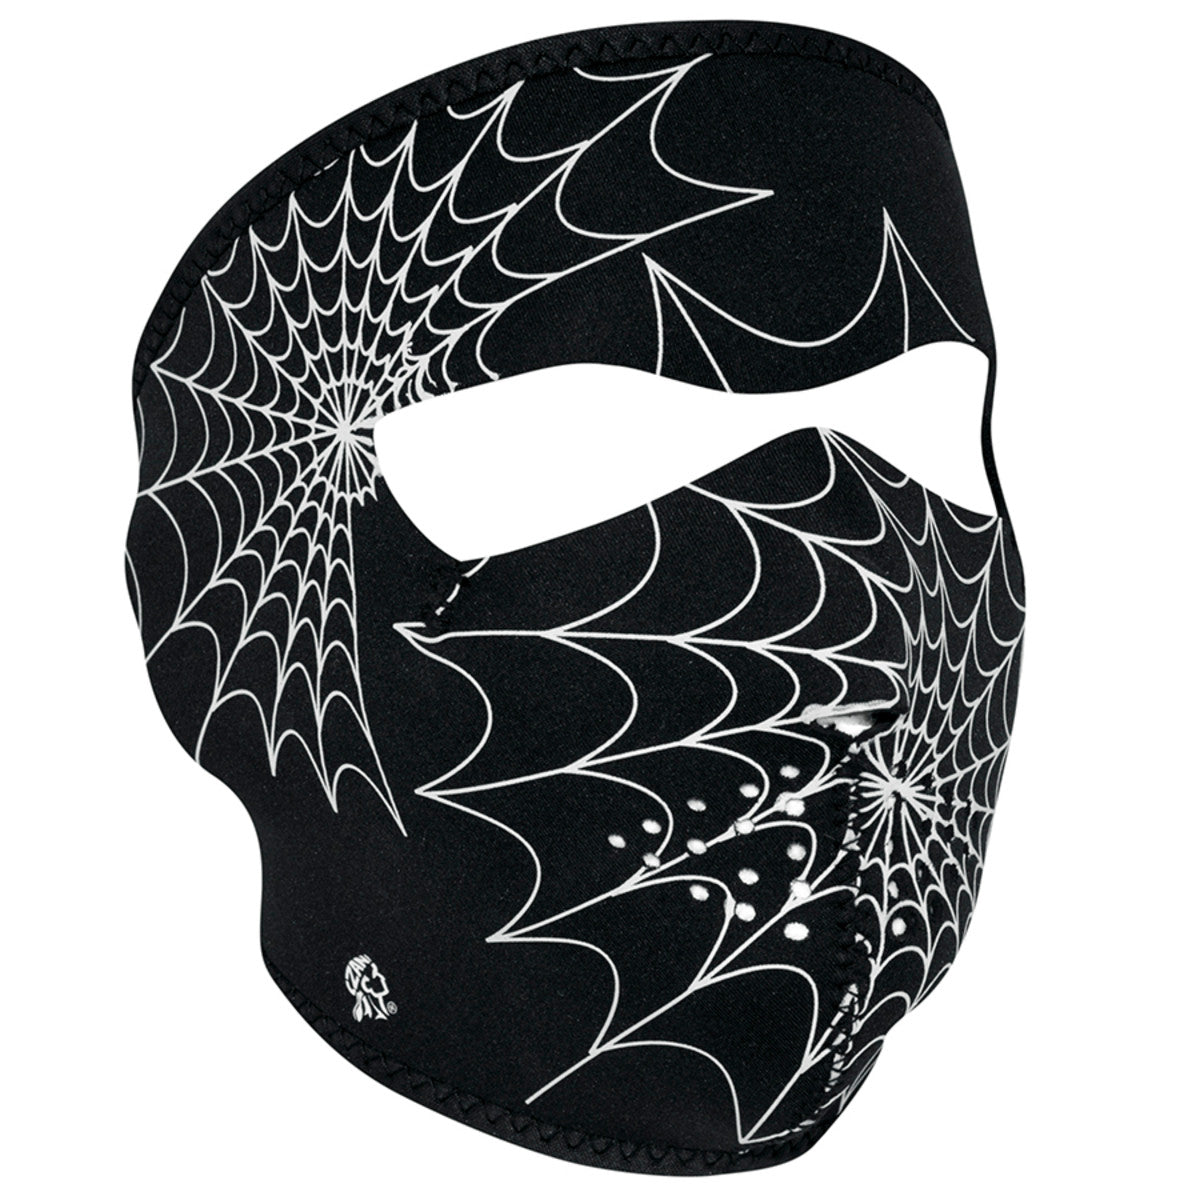 Spider Web Neoprene Full Face Mask